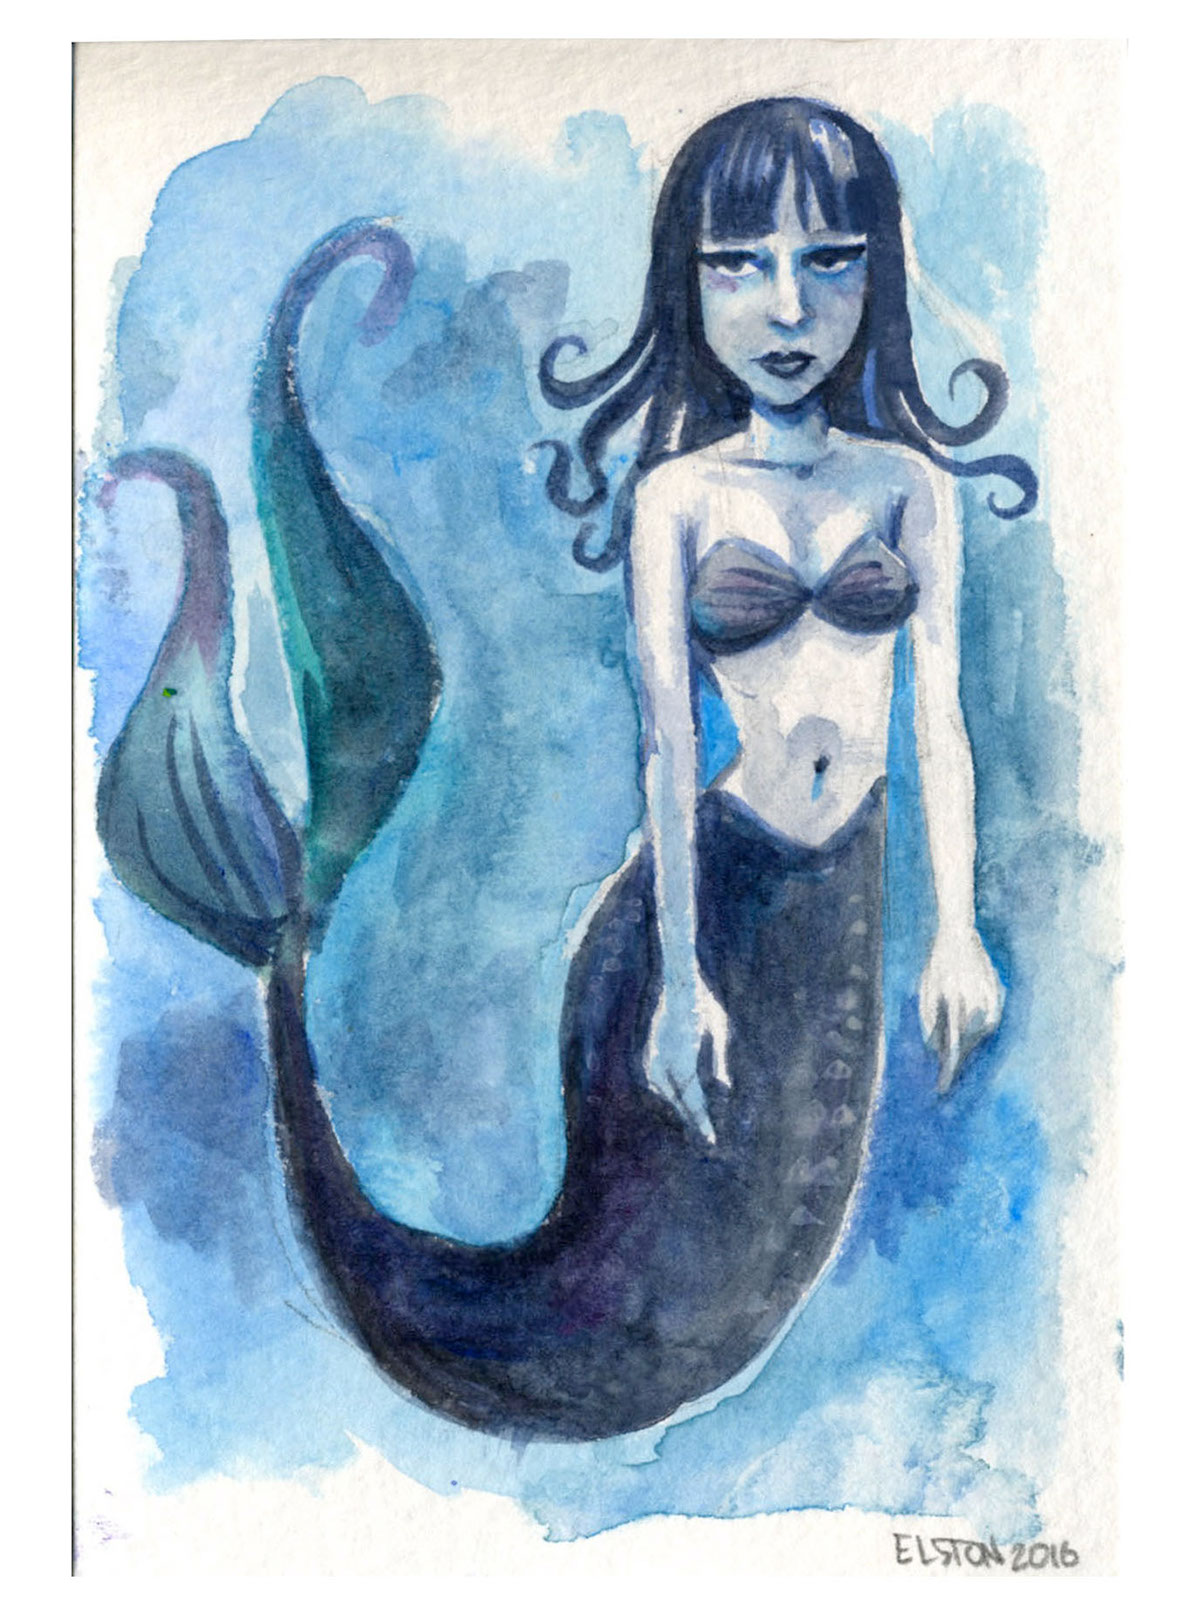 mermay mermaid ILLUSTRATION 